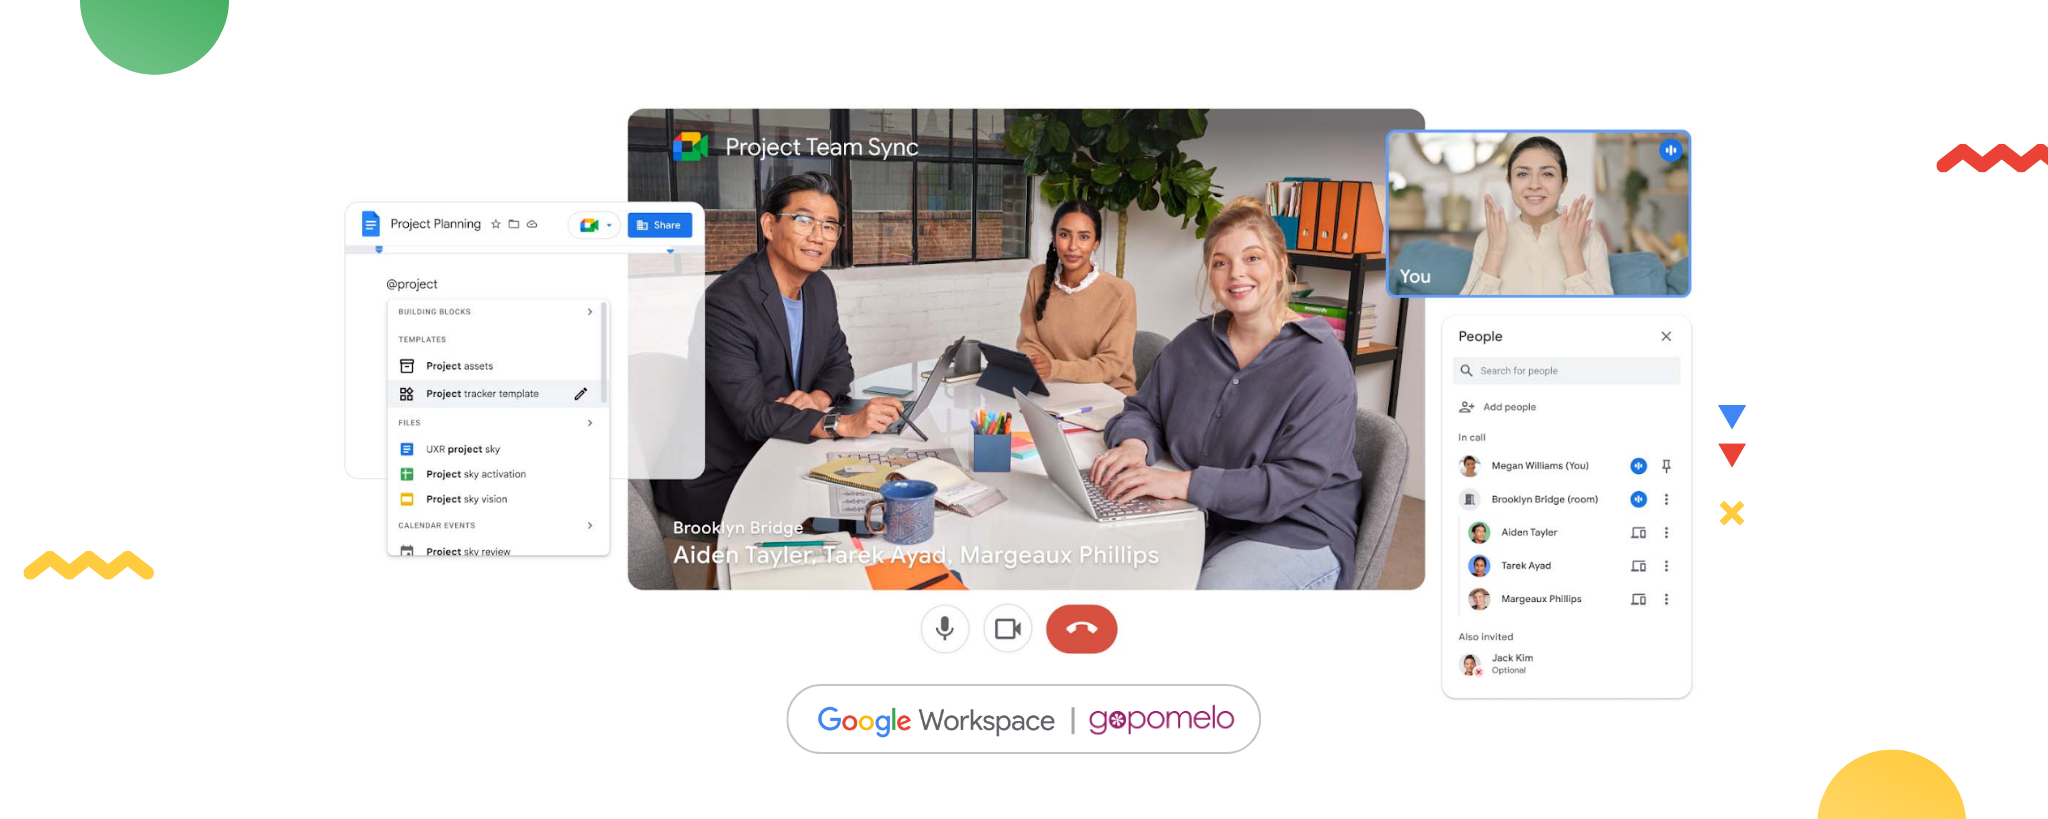 Google Workspace ปล่อยฟีเจอร์เพิ่มศักยภาพการทำงานในรูปแบบ Hybrid | GoPomelo